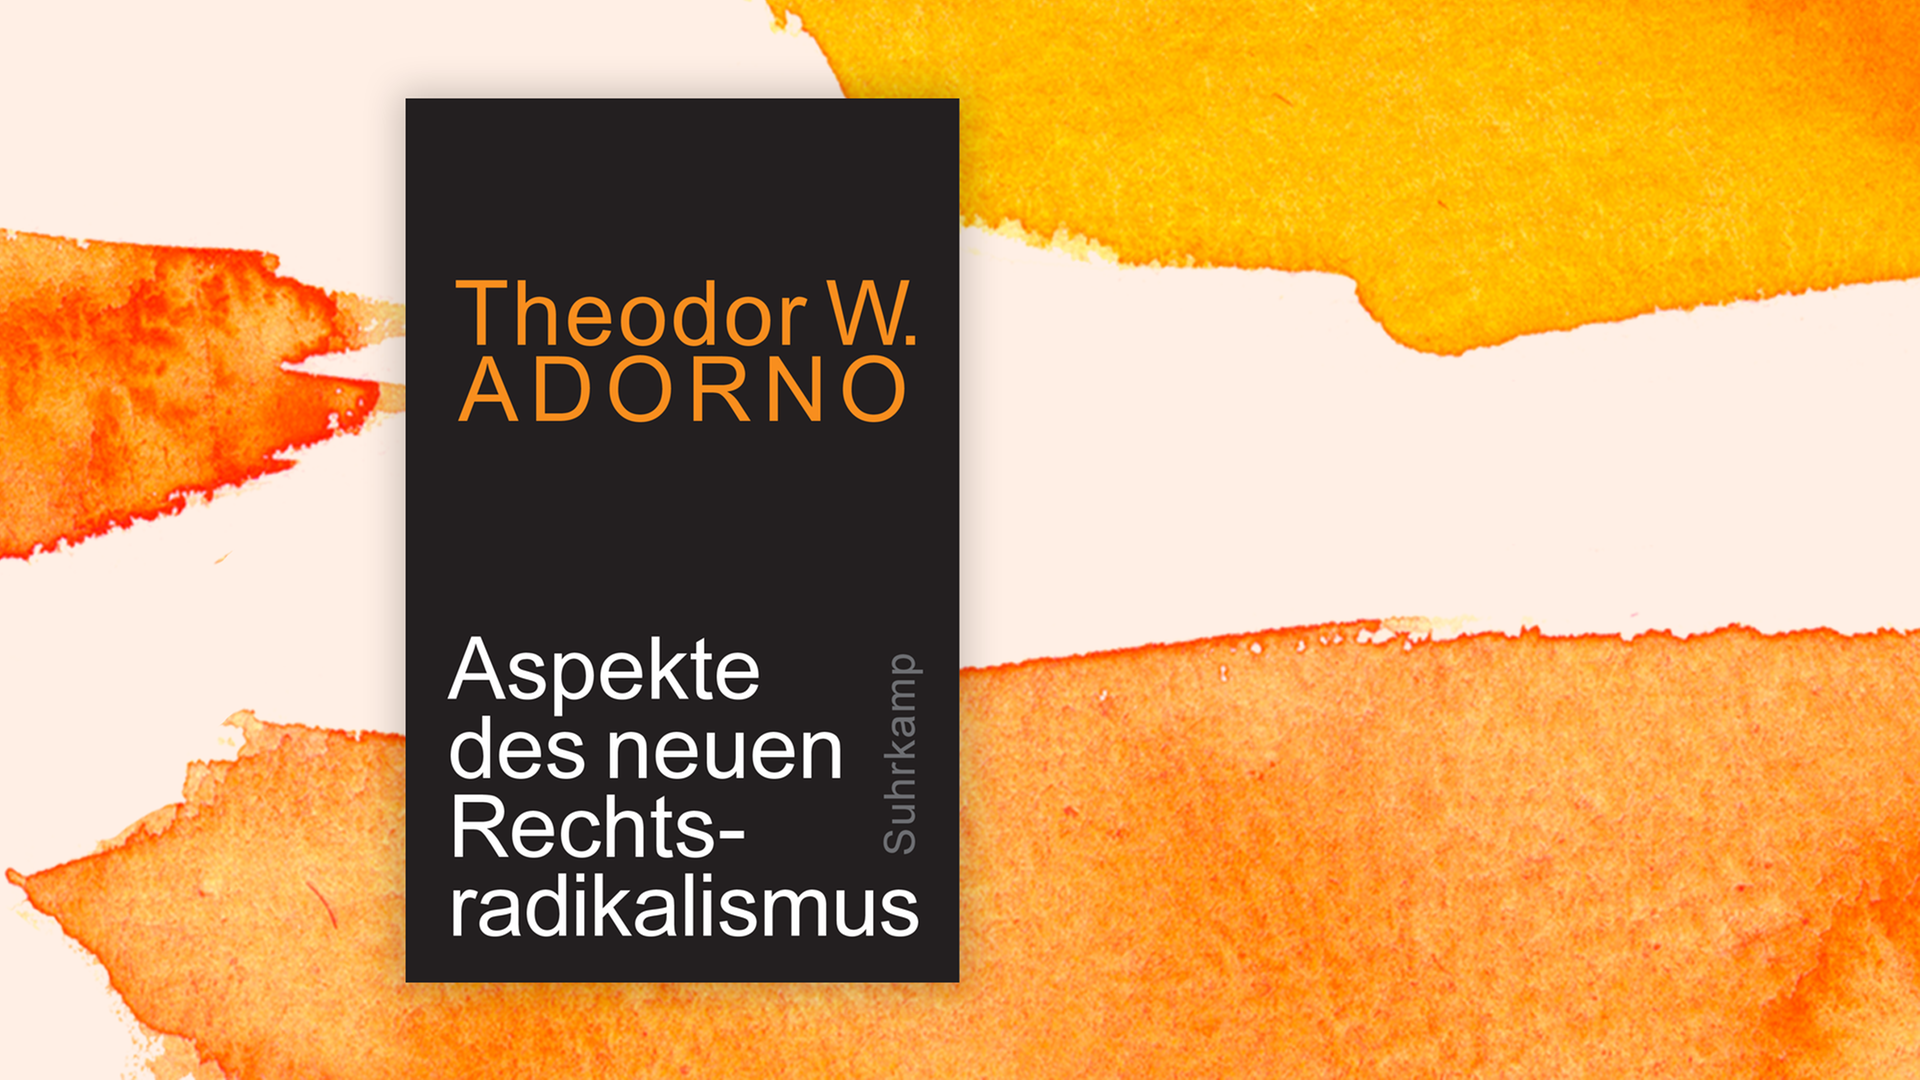 Zu sehen ist das Cover des Buches "Aspekte des neuen Rechtsradikalismus" von Theodor W. Adorno.